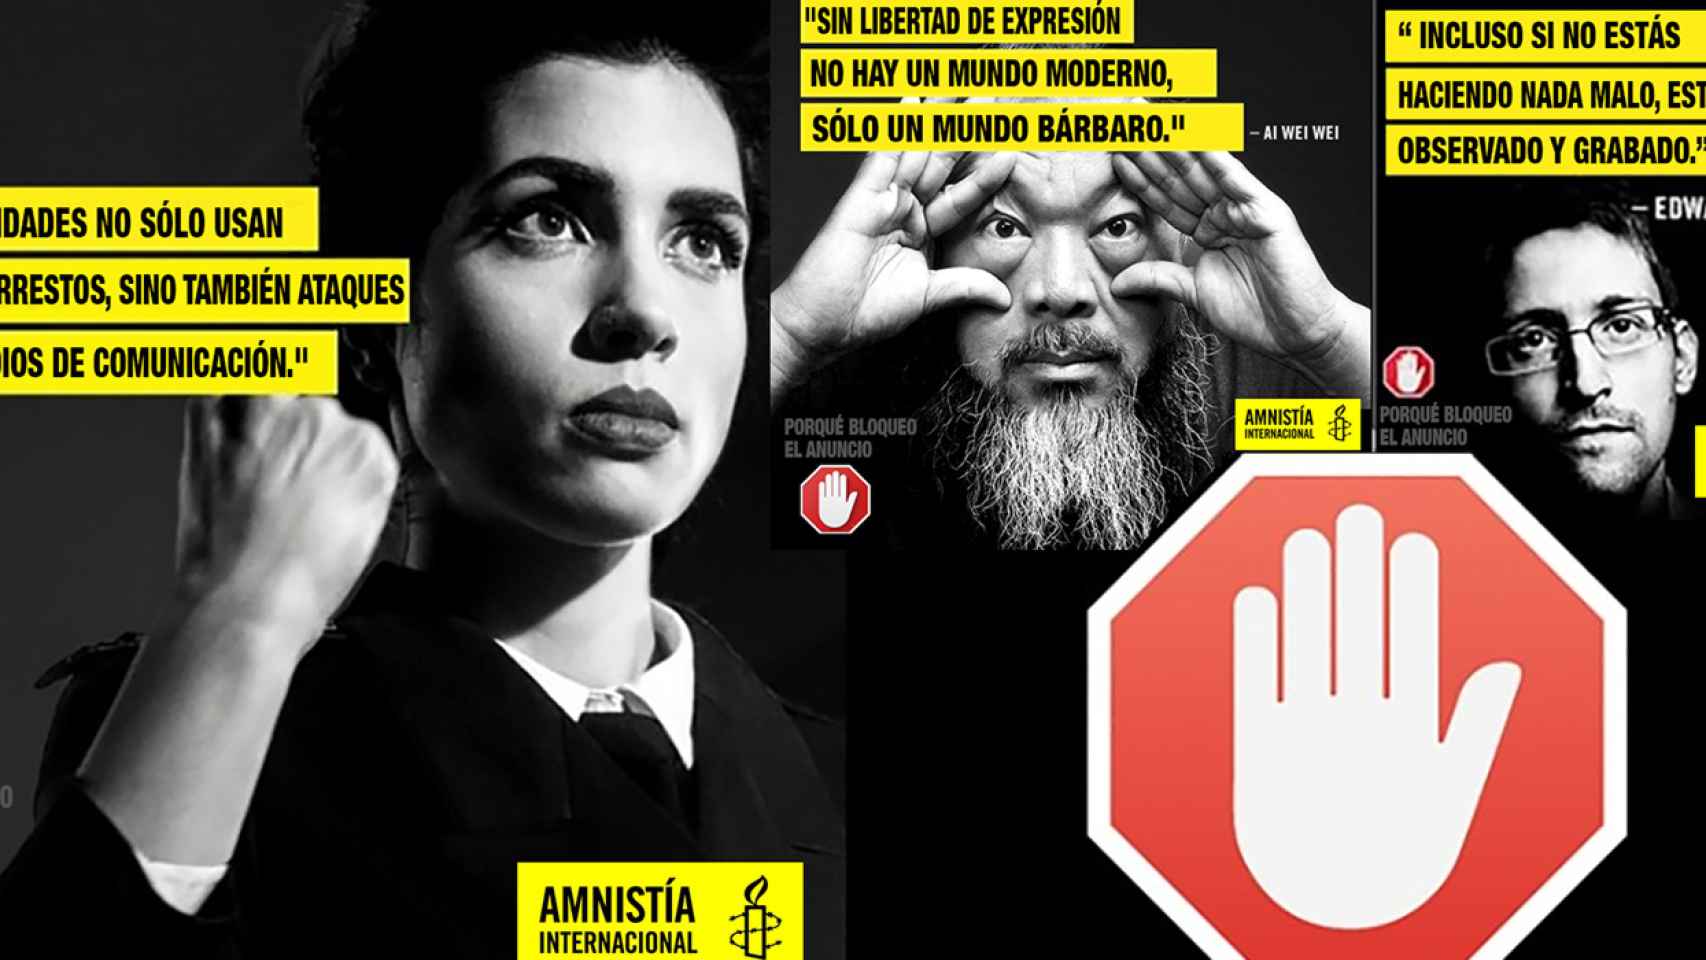 Una imagen de la campaña de Amnistia Internacional y Eye/O en contra de la cibercensura.